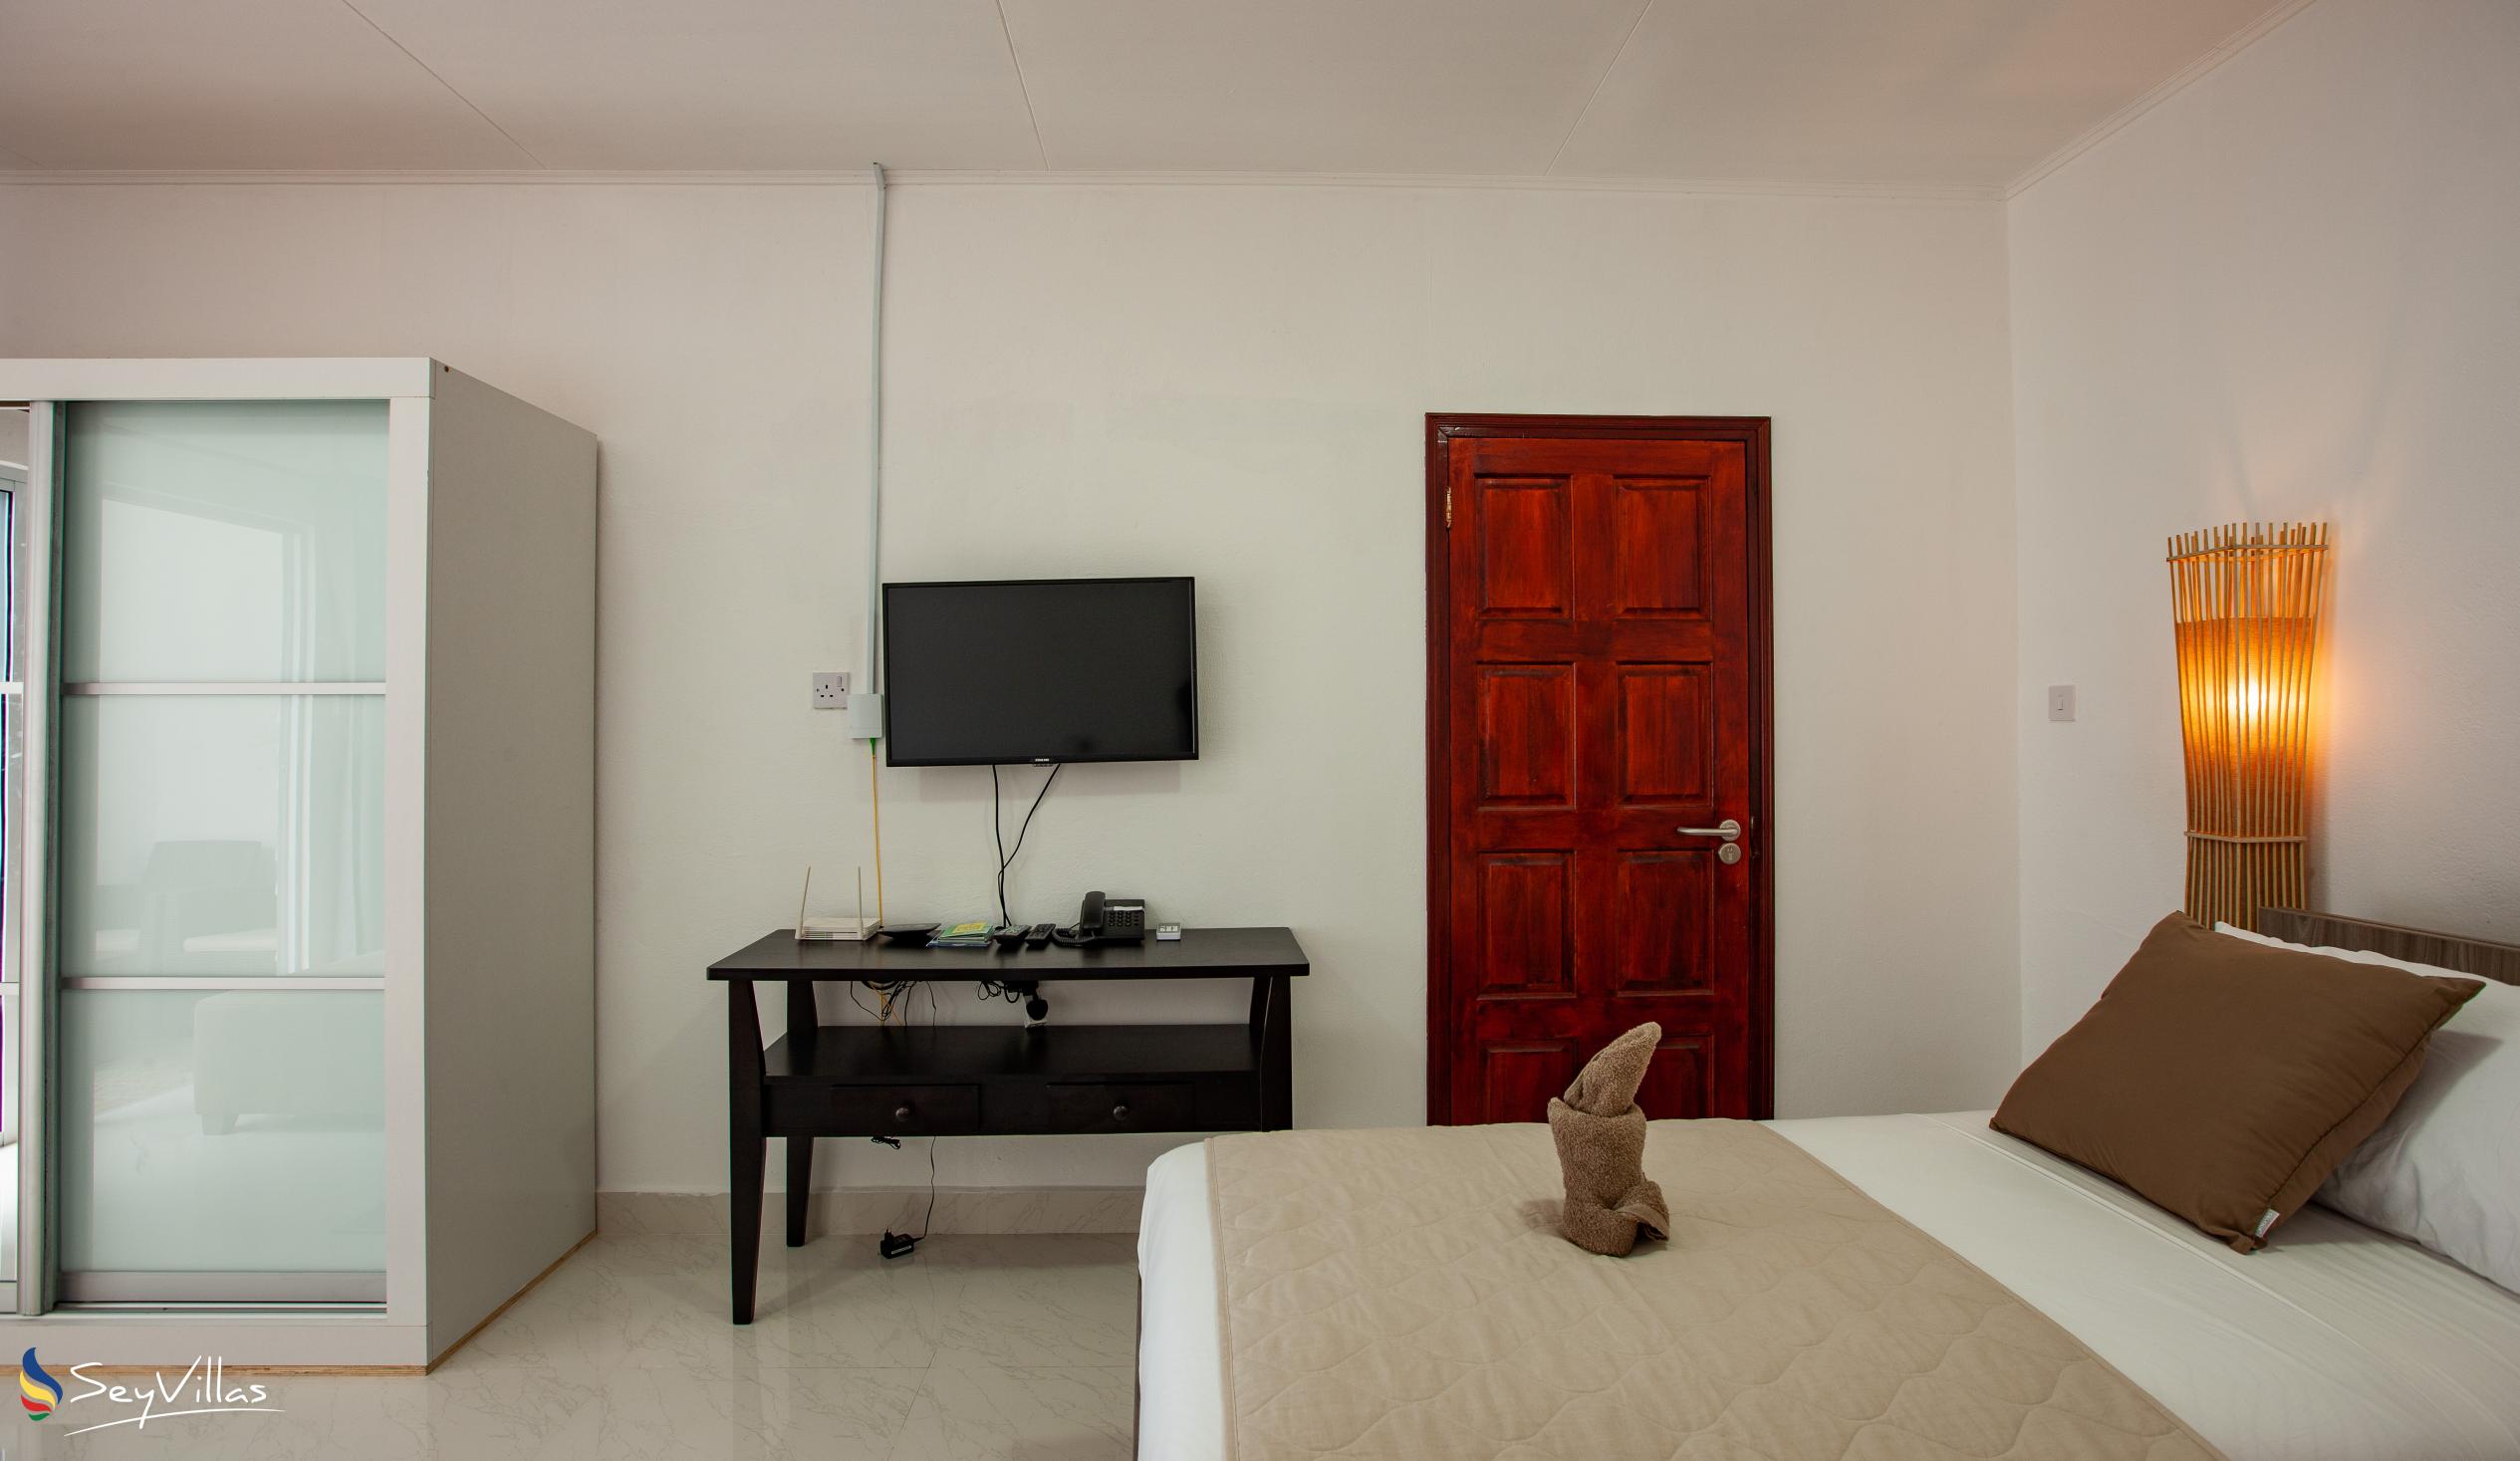 Foto 39: Hotel Plein Soleil - Camera con 2 letti singoli - Praslin (Seychelles)